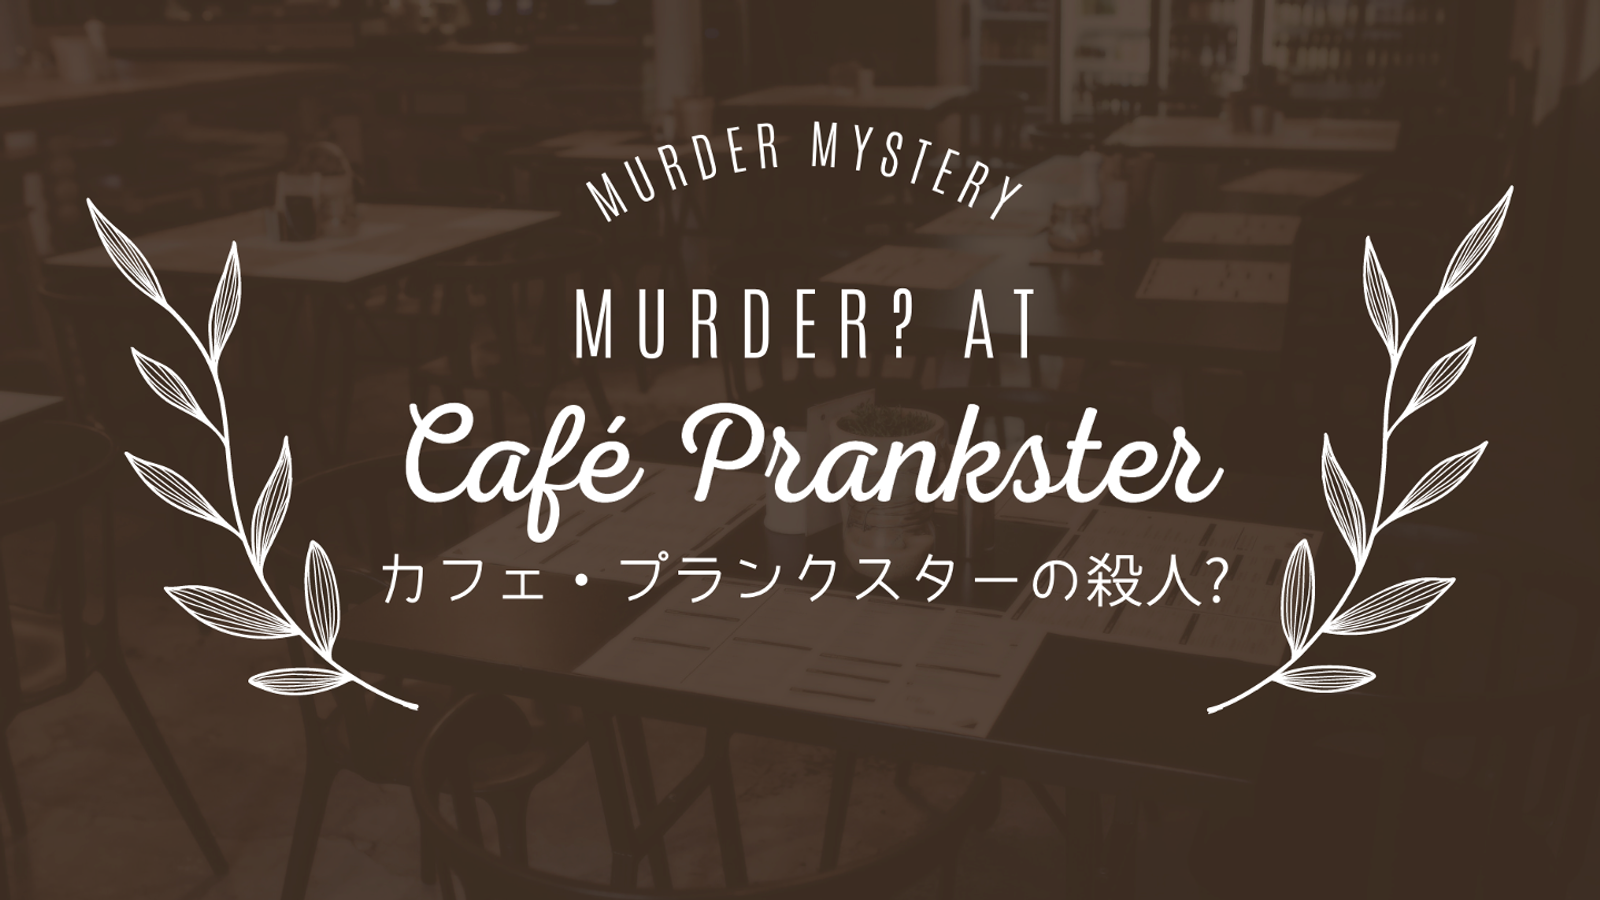 カフェ・プランクスターの殺人？